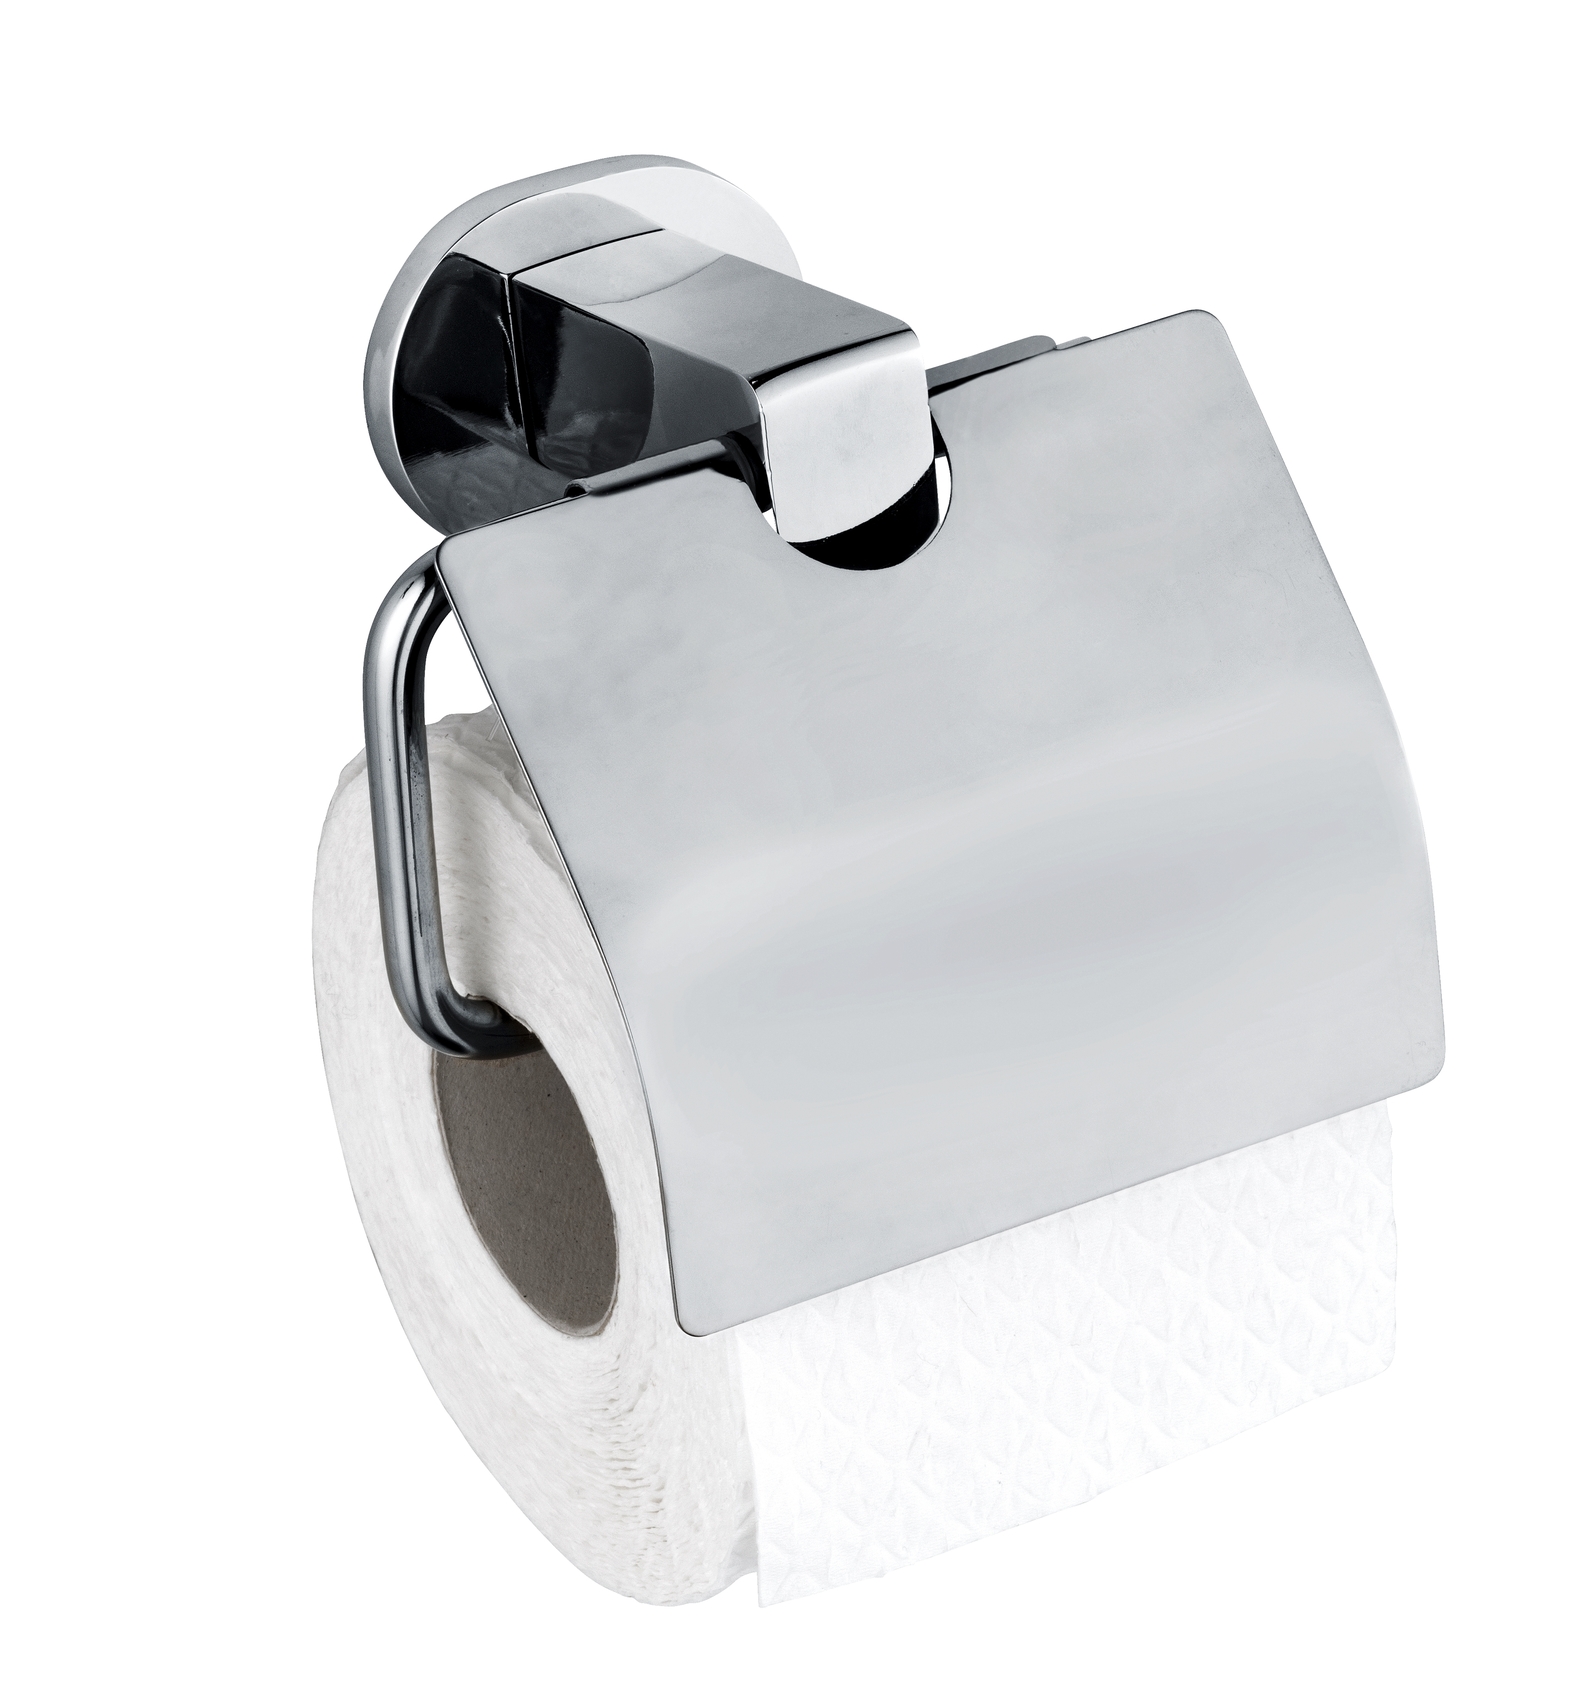 Wenko UV-Loc® Toilettenpapierhalter Maribor 14 x 12,5 x 7,5 cm, mit Deckel, silber glänzend. Befestigen ohne bohren